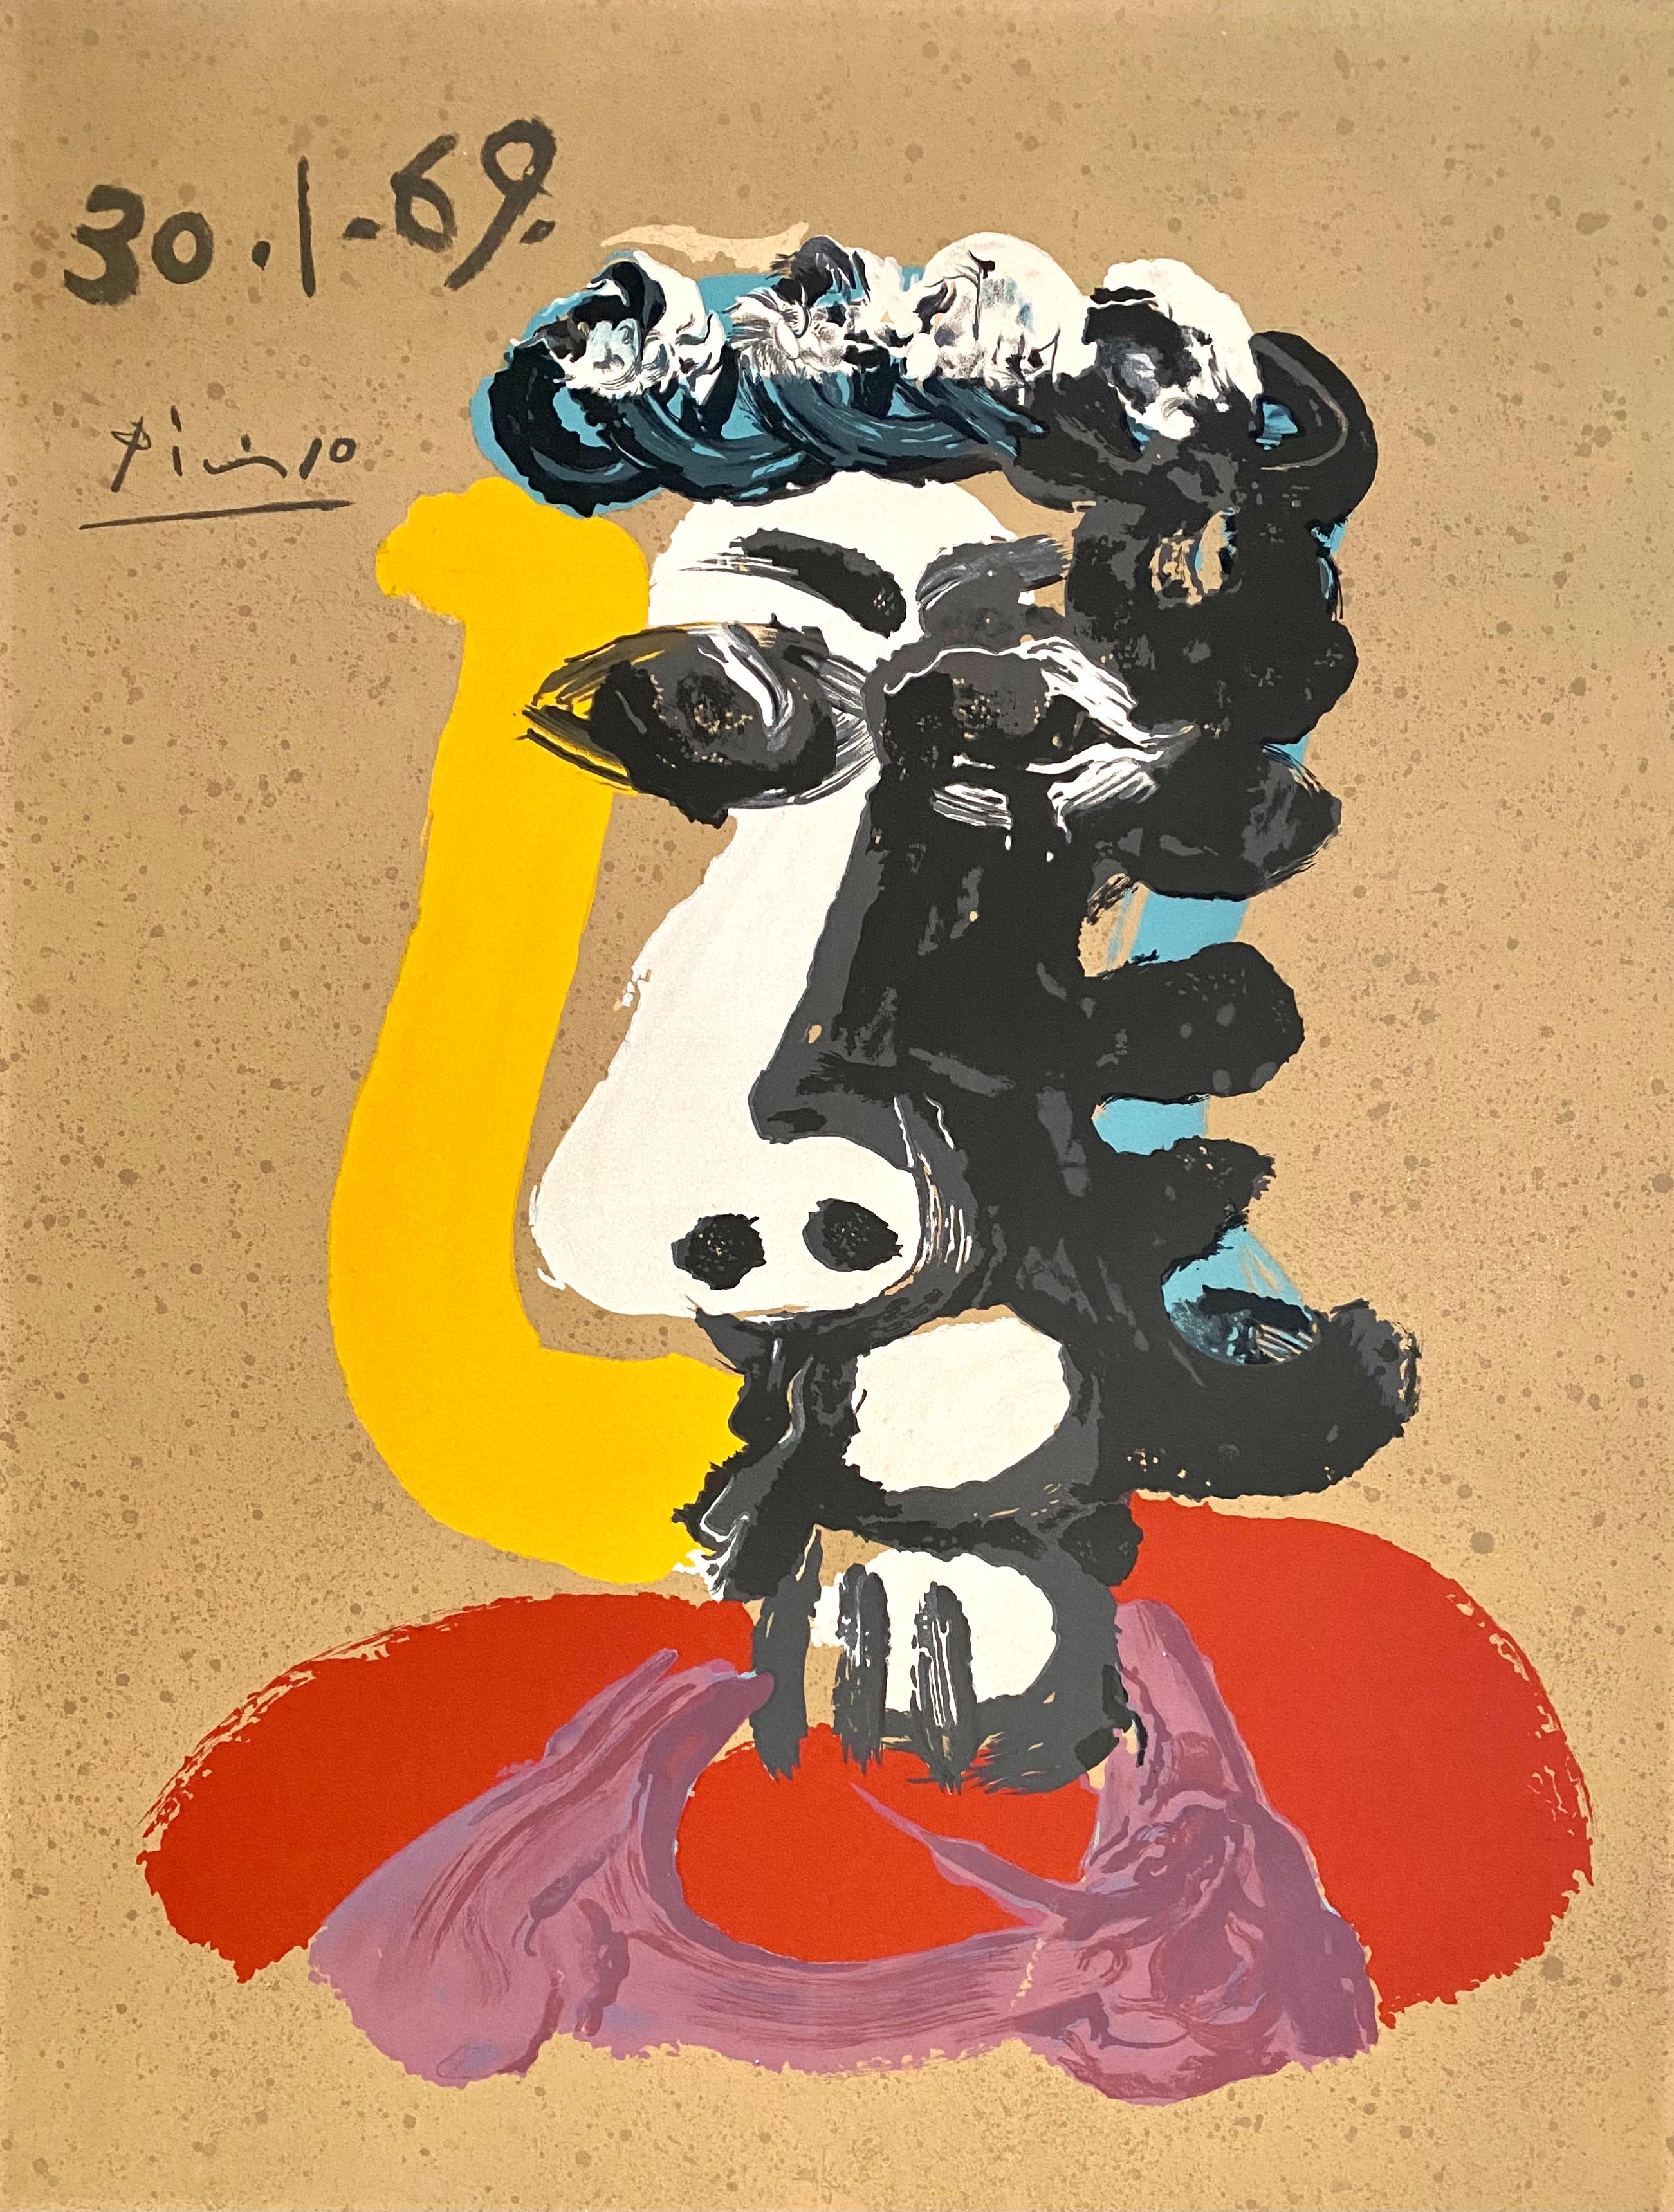 Portrait Print Pablo Picasso - Imaginaires - Portraits - 30.1.69